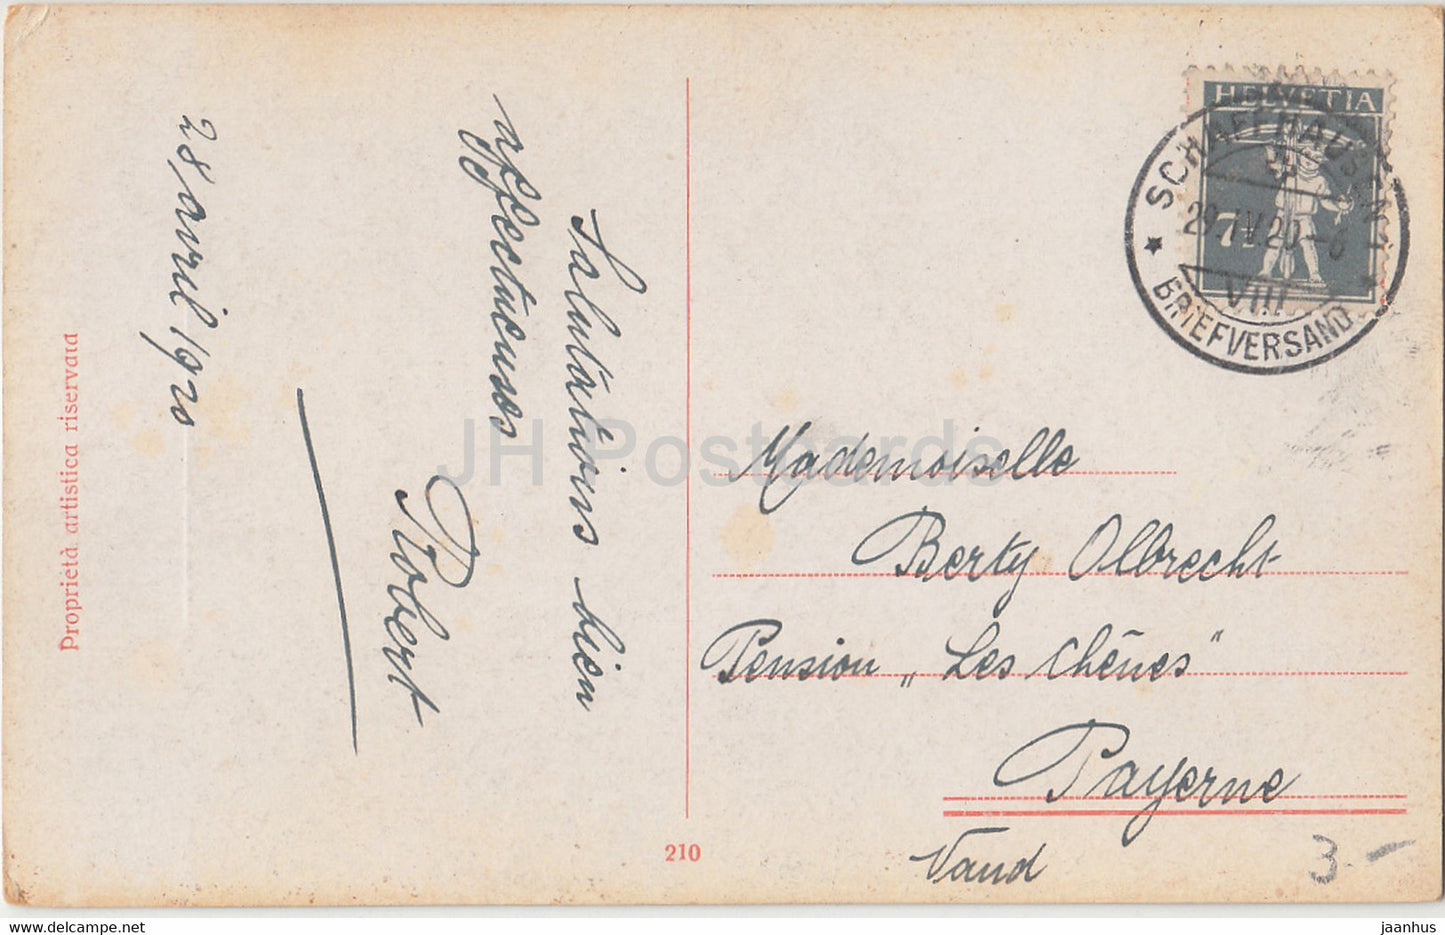 jeune femme écrivant une lettre - illustration de A. Simeone - 210 - carte postale ancienne - 1920 - Italie - utilisé